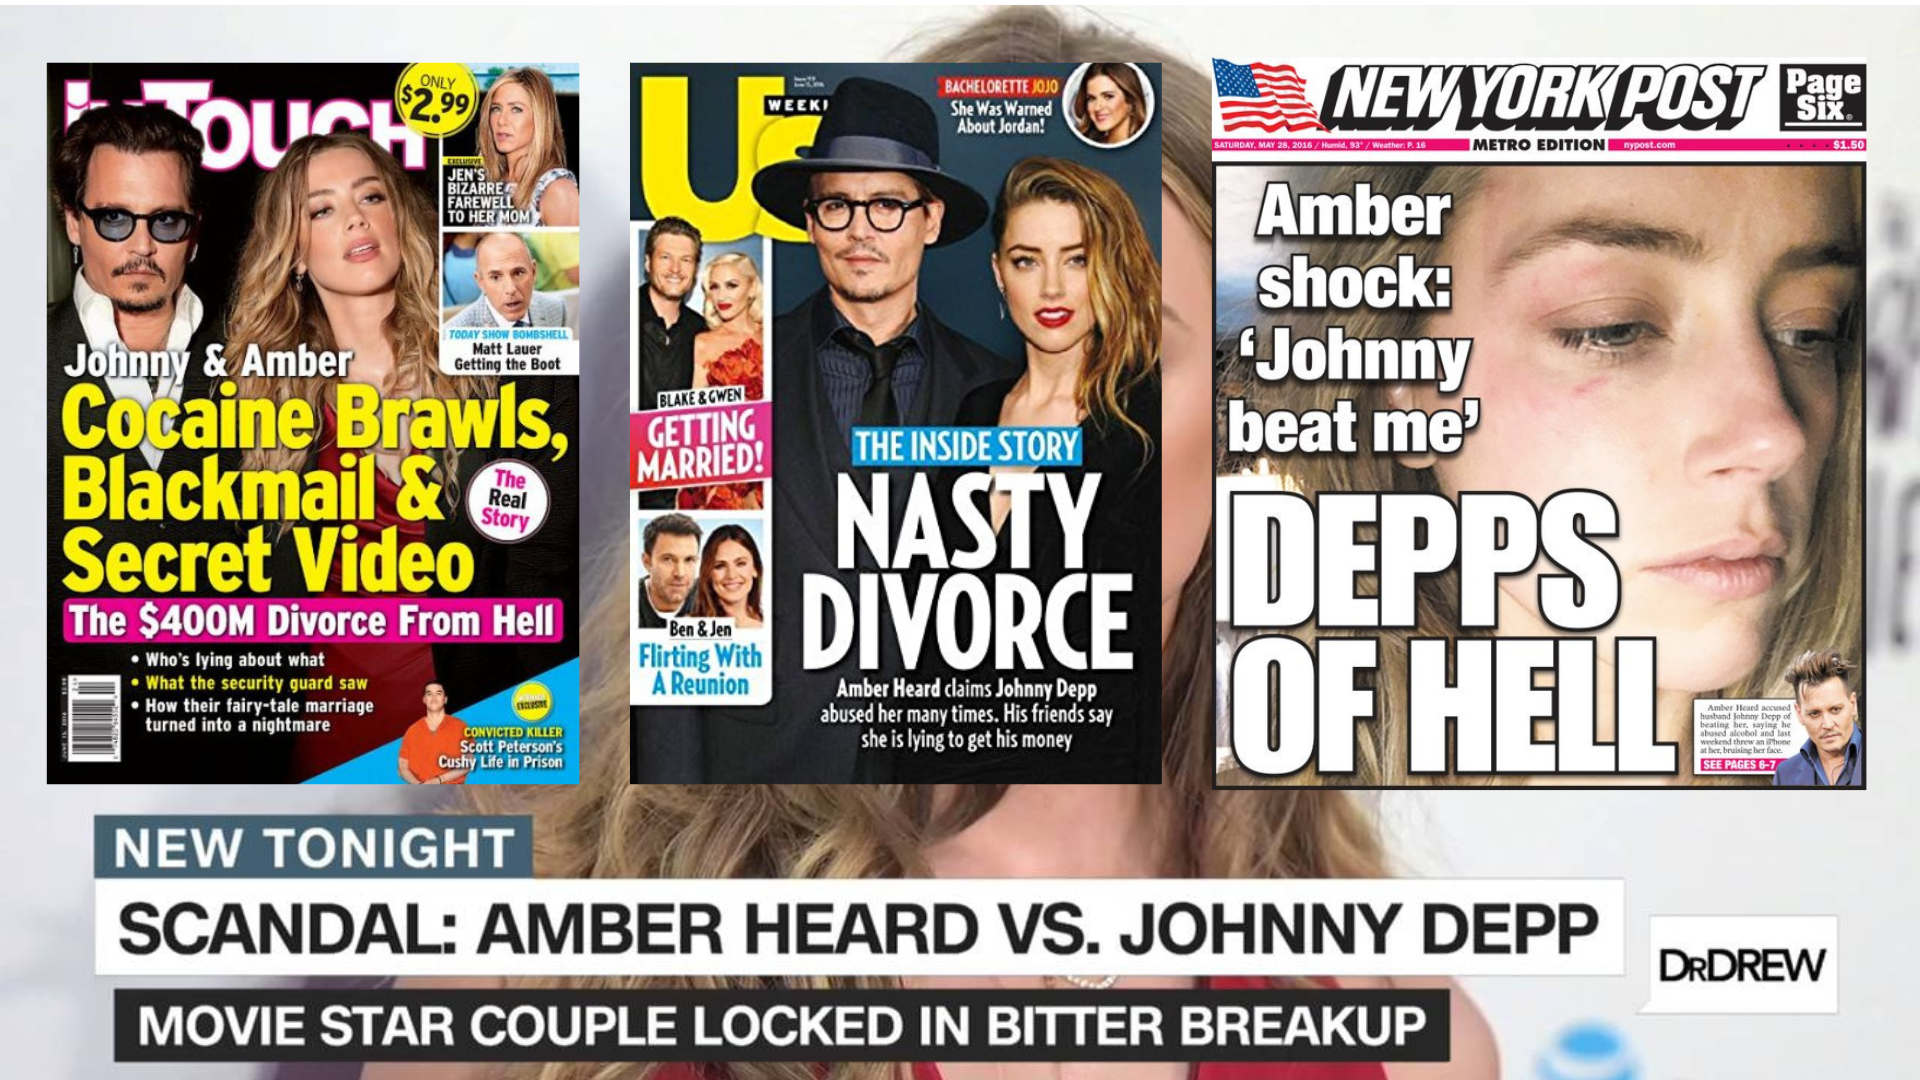 Kaikki mitä luulit tietäväsi Johnny Deppin ja Amber Heardin erosta on luultavasti väärin kuva